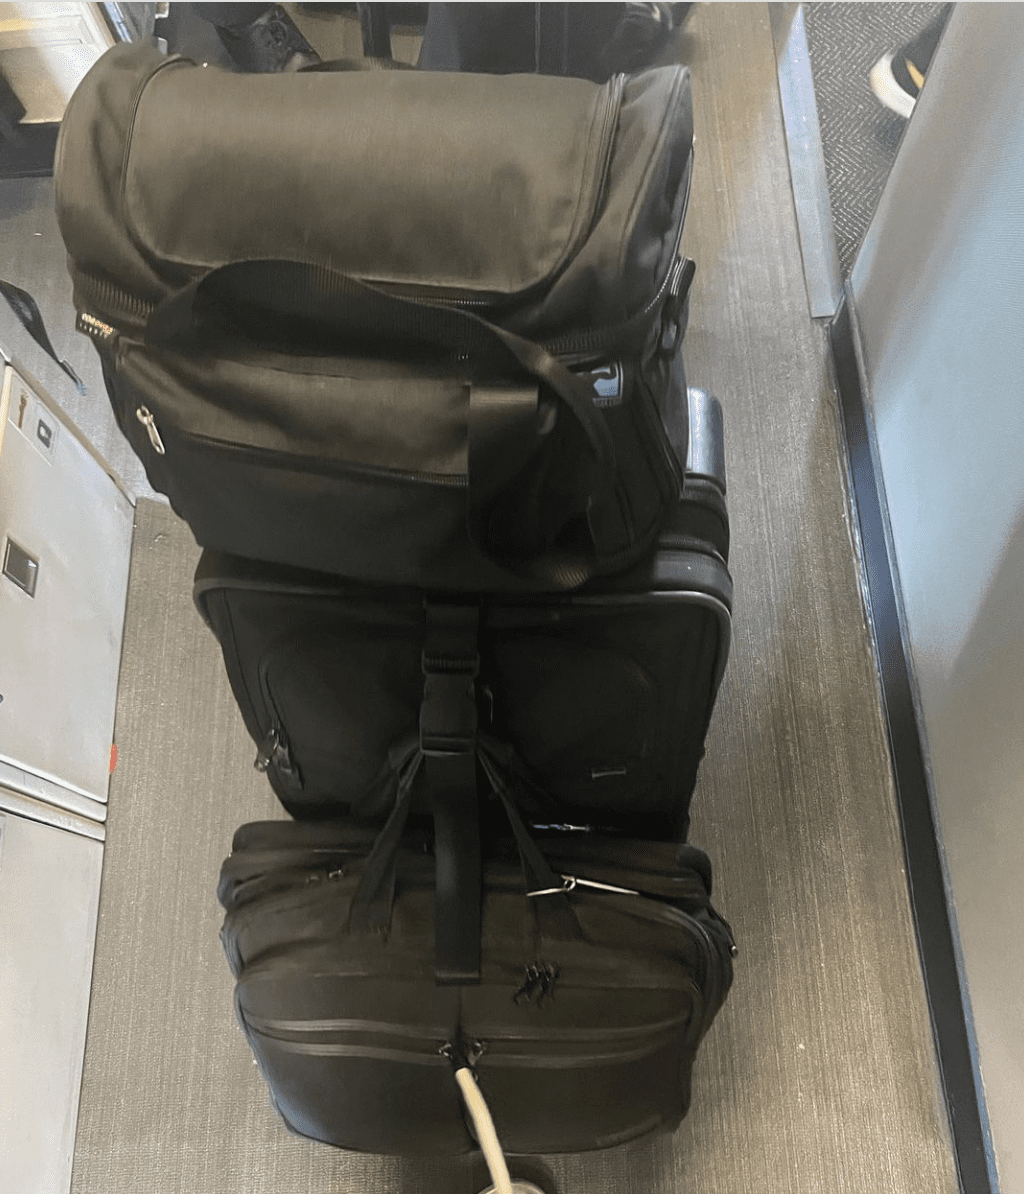 Wayans plaatste later een foto van een andere persoon die meerdere handbagagetassen bij zich had die hij gemakkelijk op de vlucht klom.